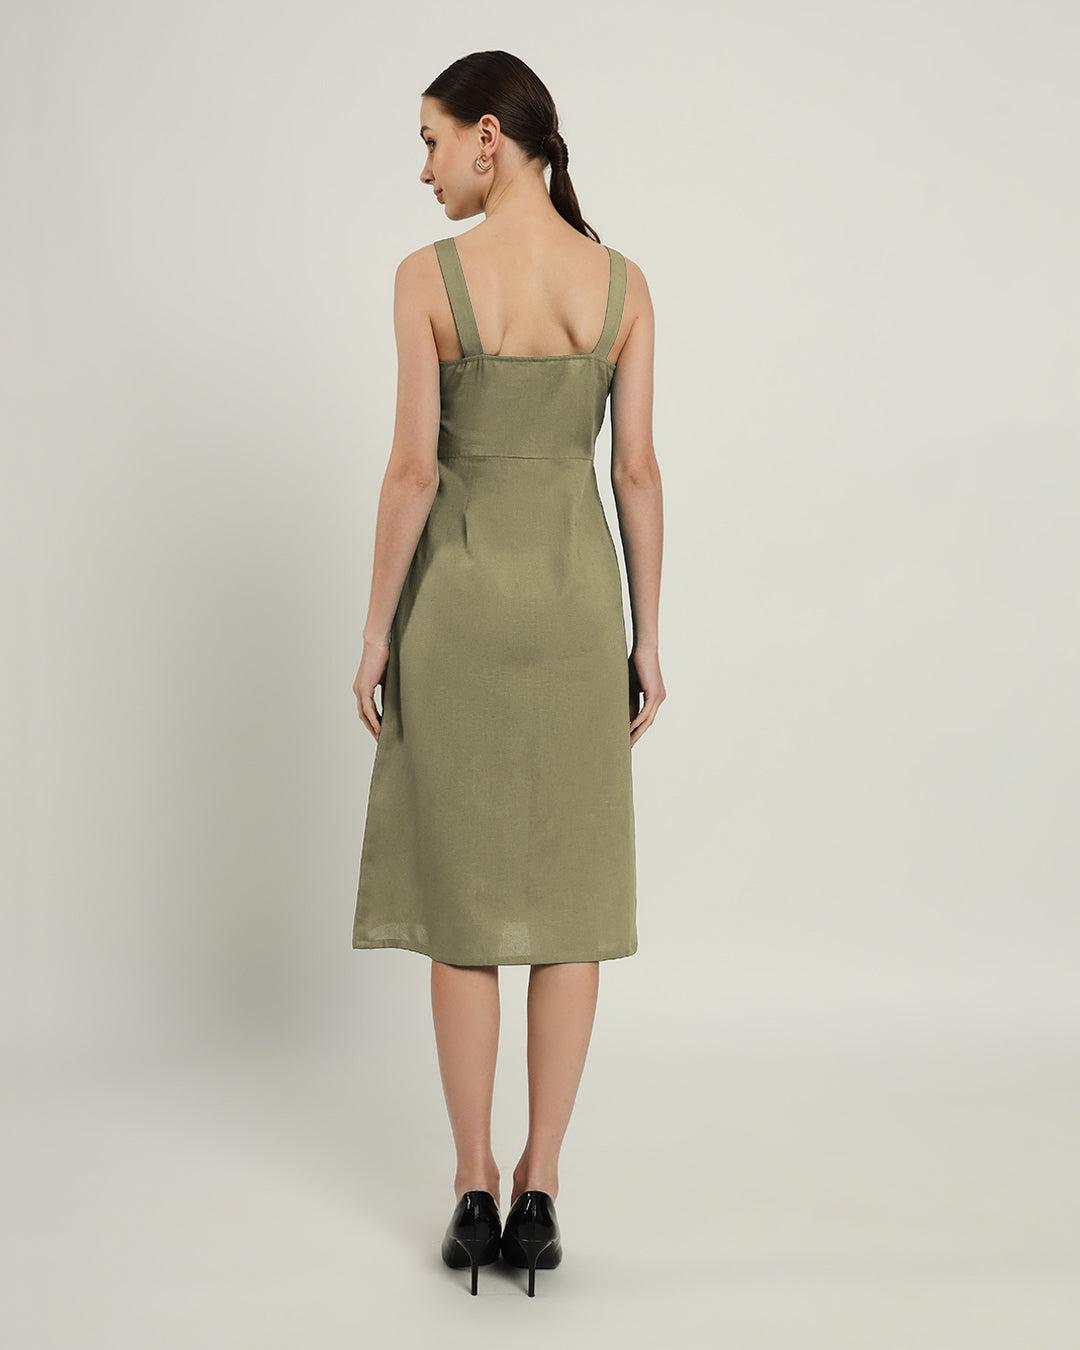 The Samara Daisy Olive Linen Dress